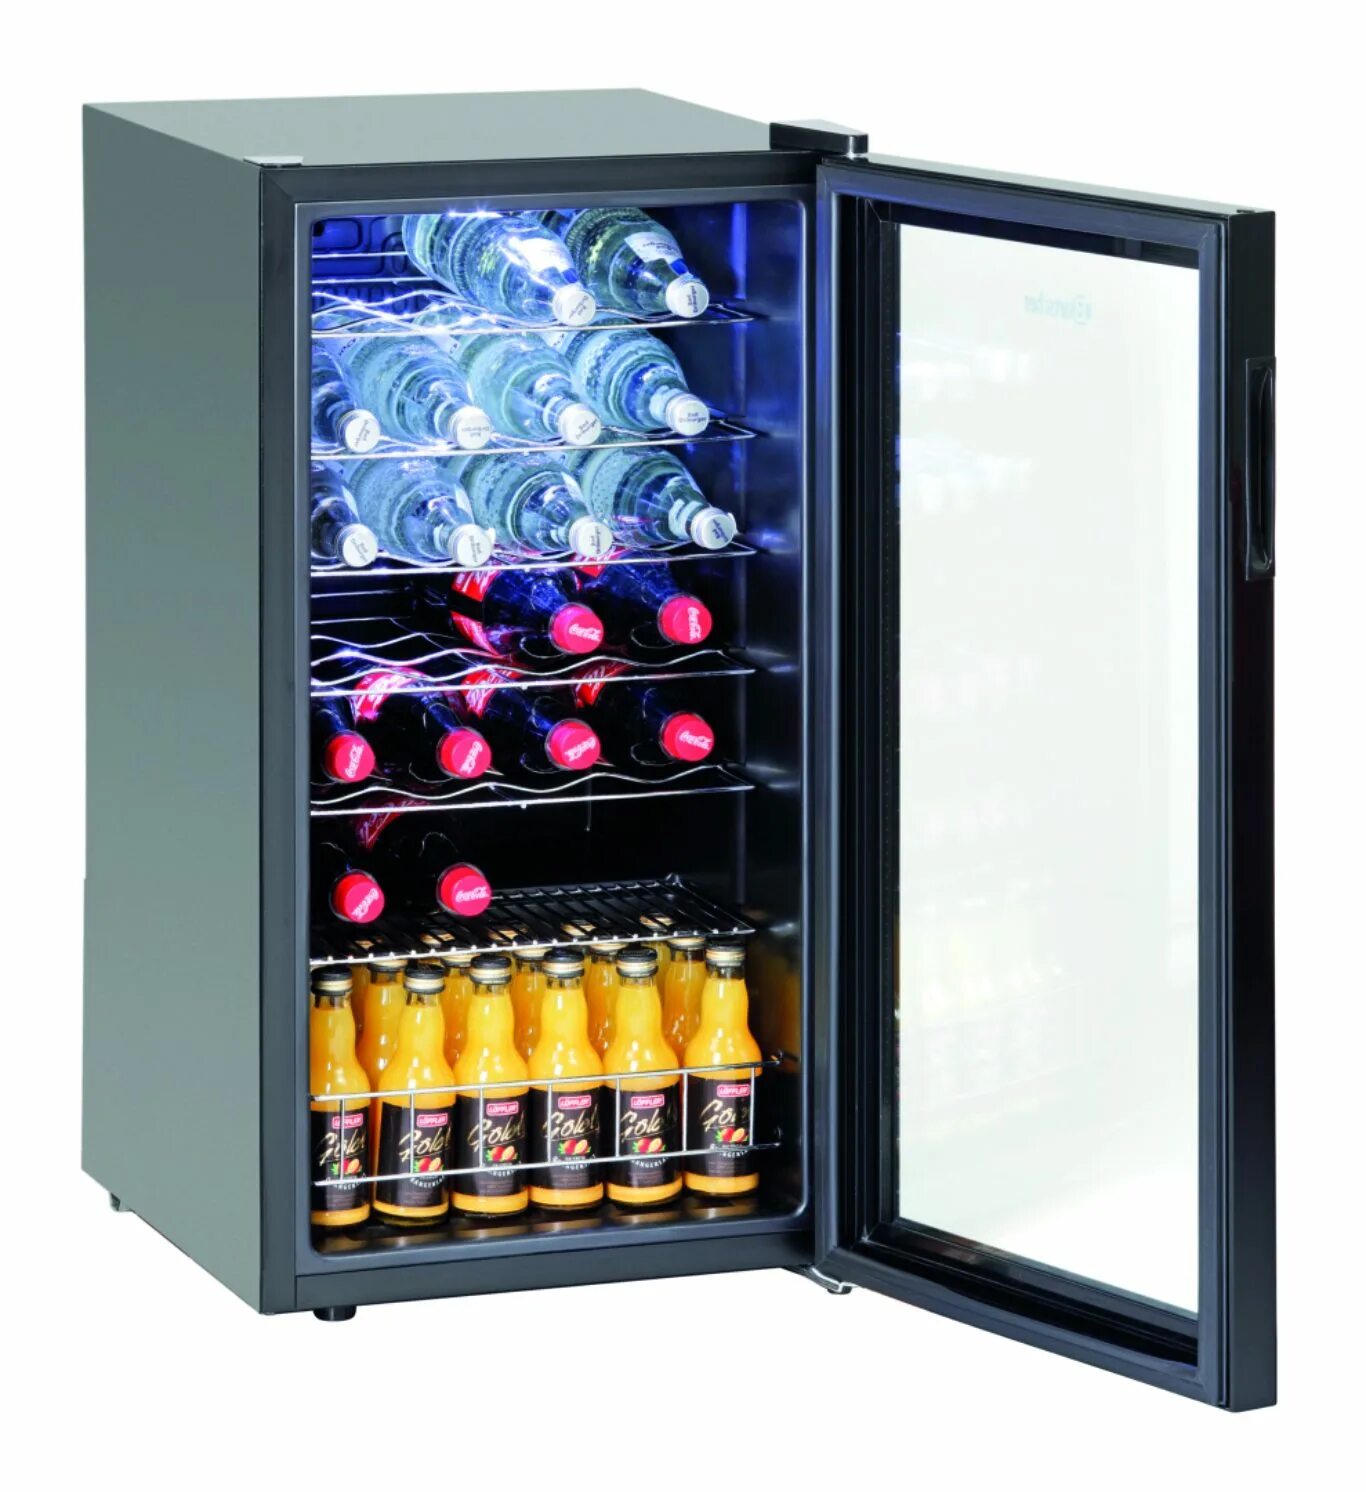 Шкаф Bartscher 700082g. Холодильник для напитков mings87. Шкаф холодильник для вина s183. Холодильный шкаф Mini Bartscher 700089. Холодильник для бутылок купить